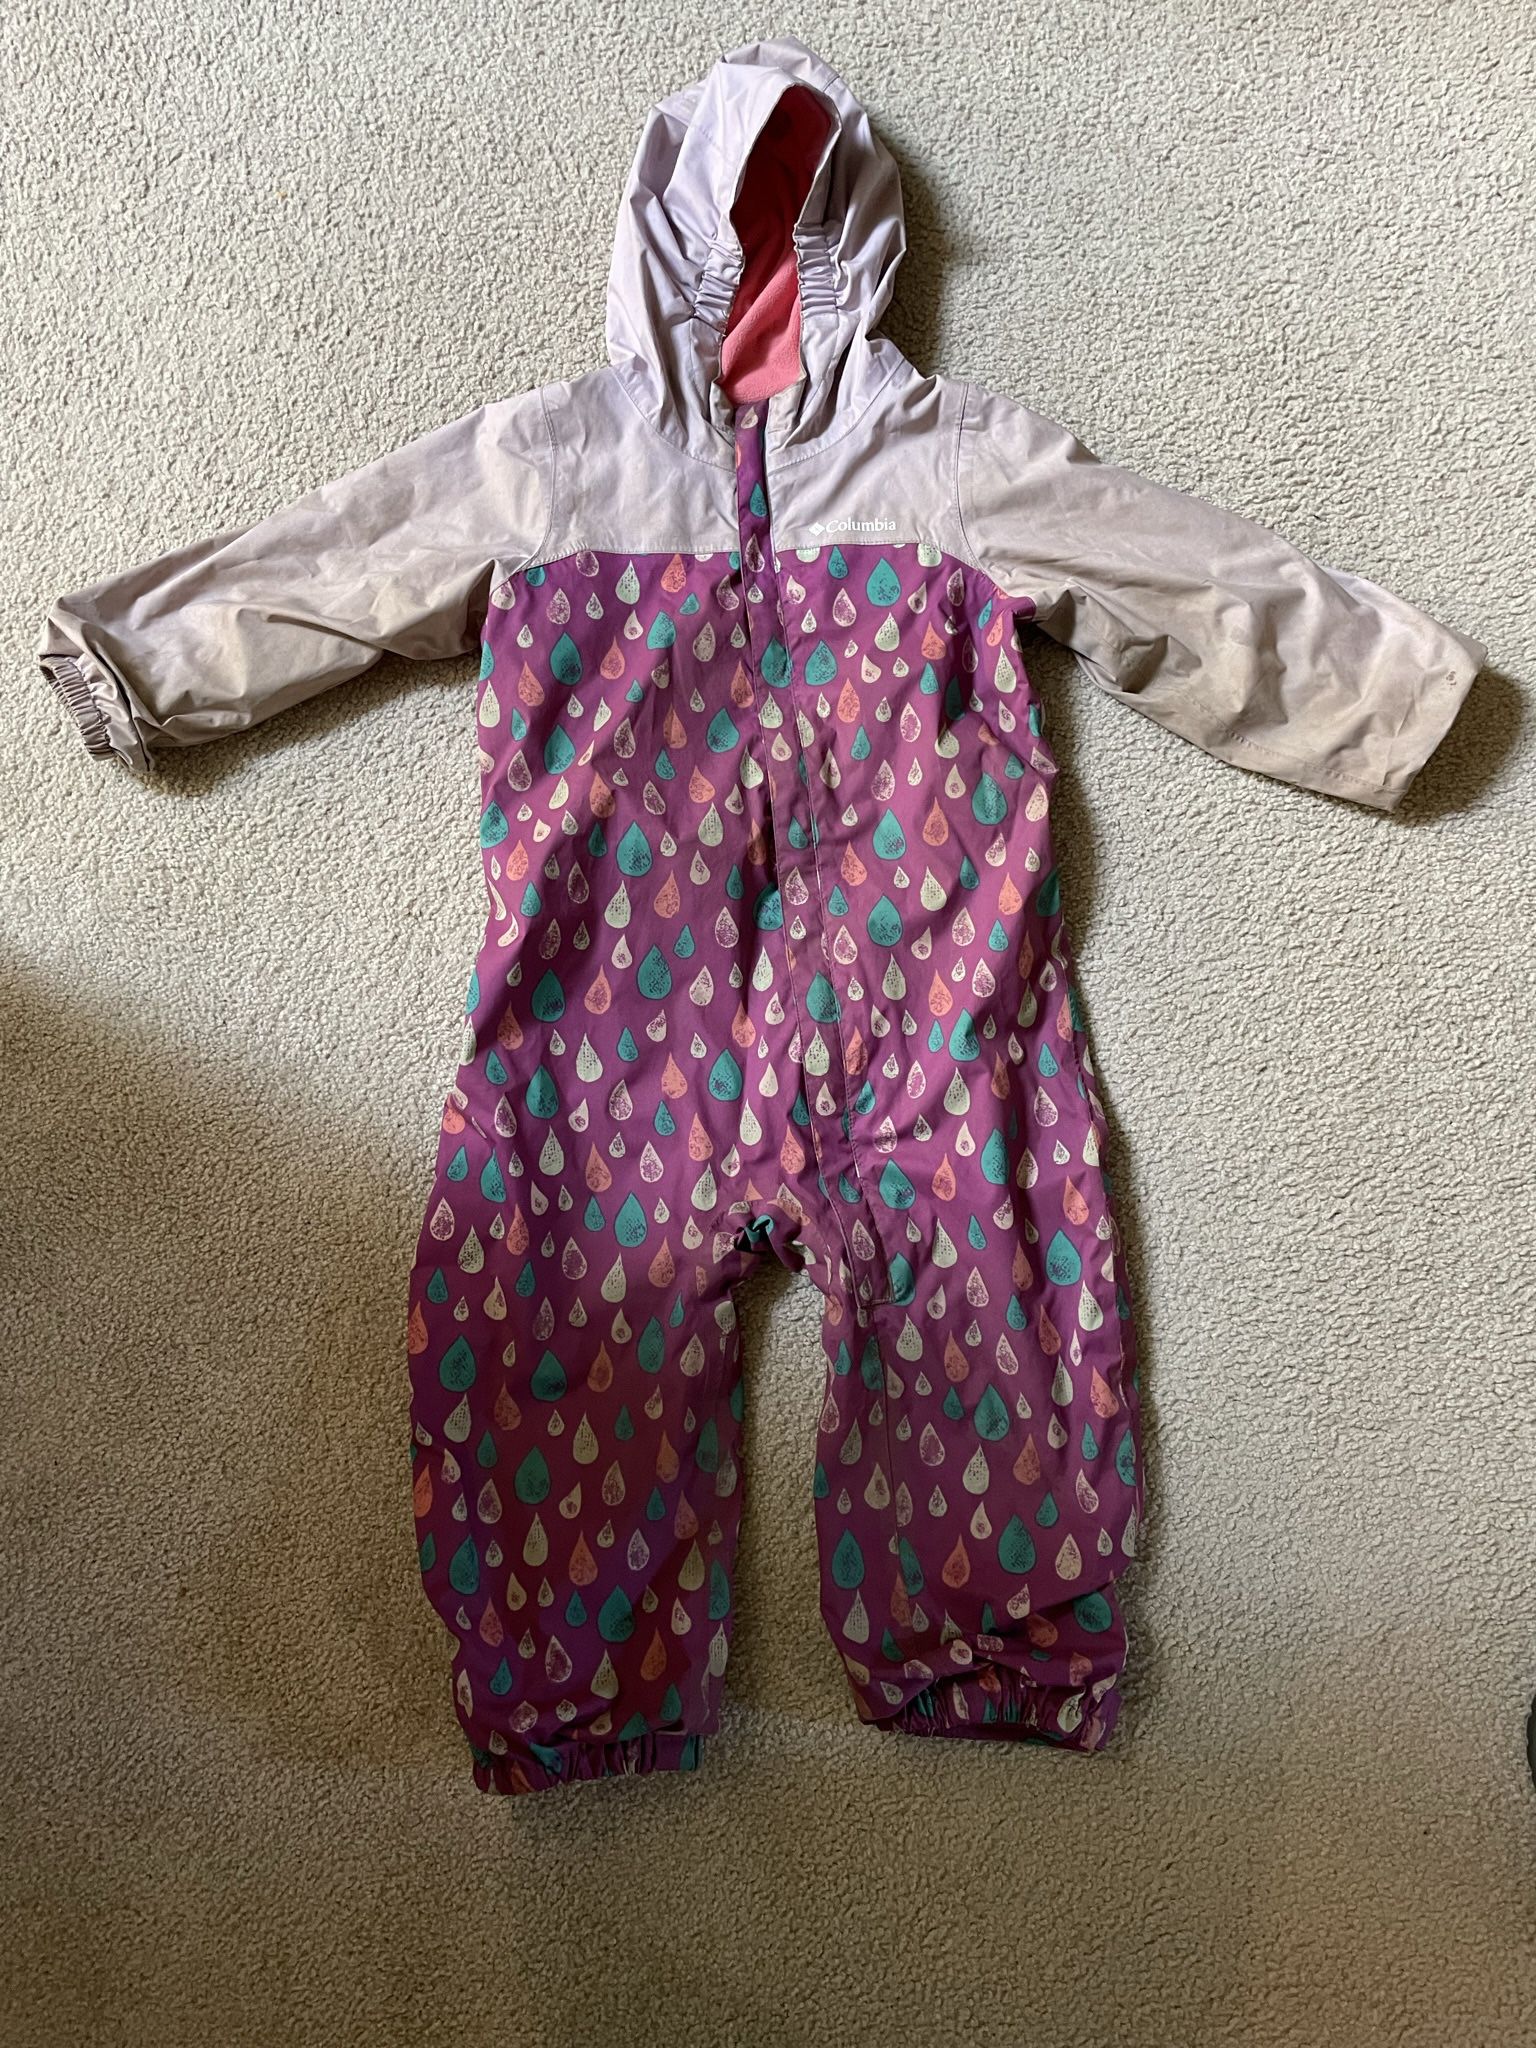 Rain Suit Columbia Toddler 3T